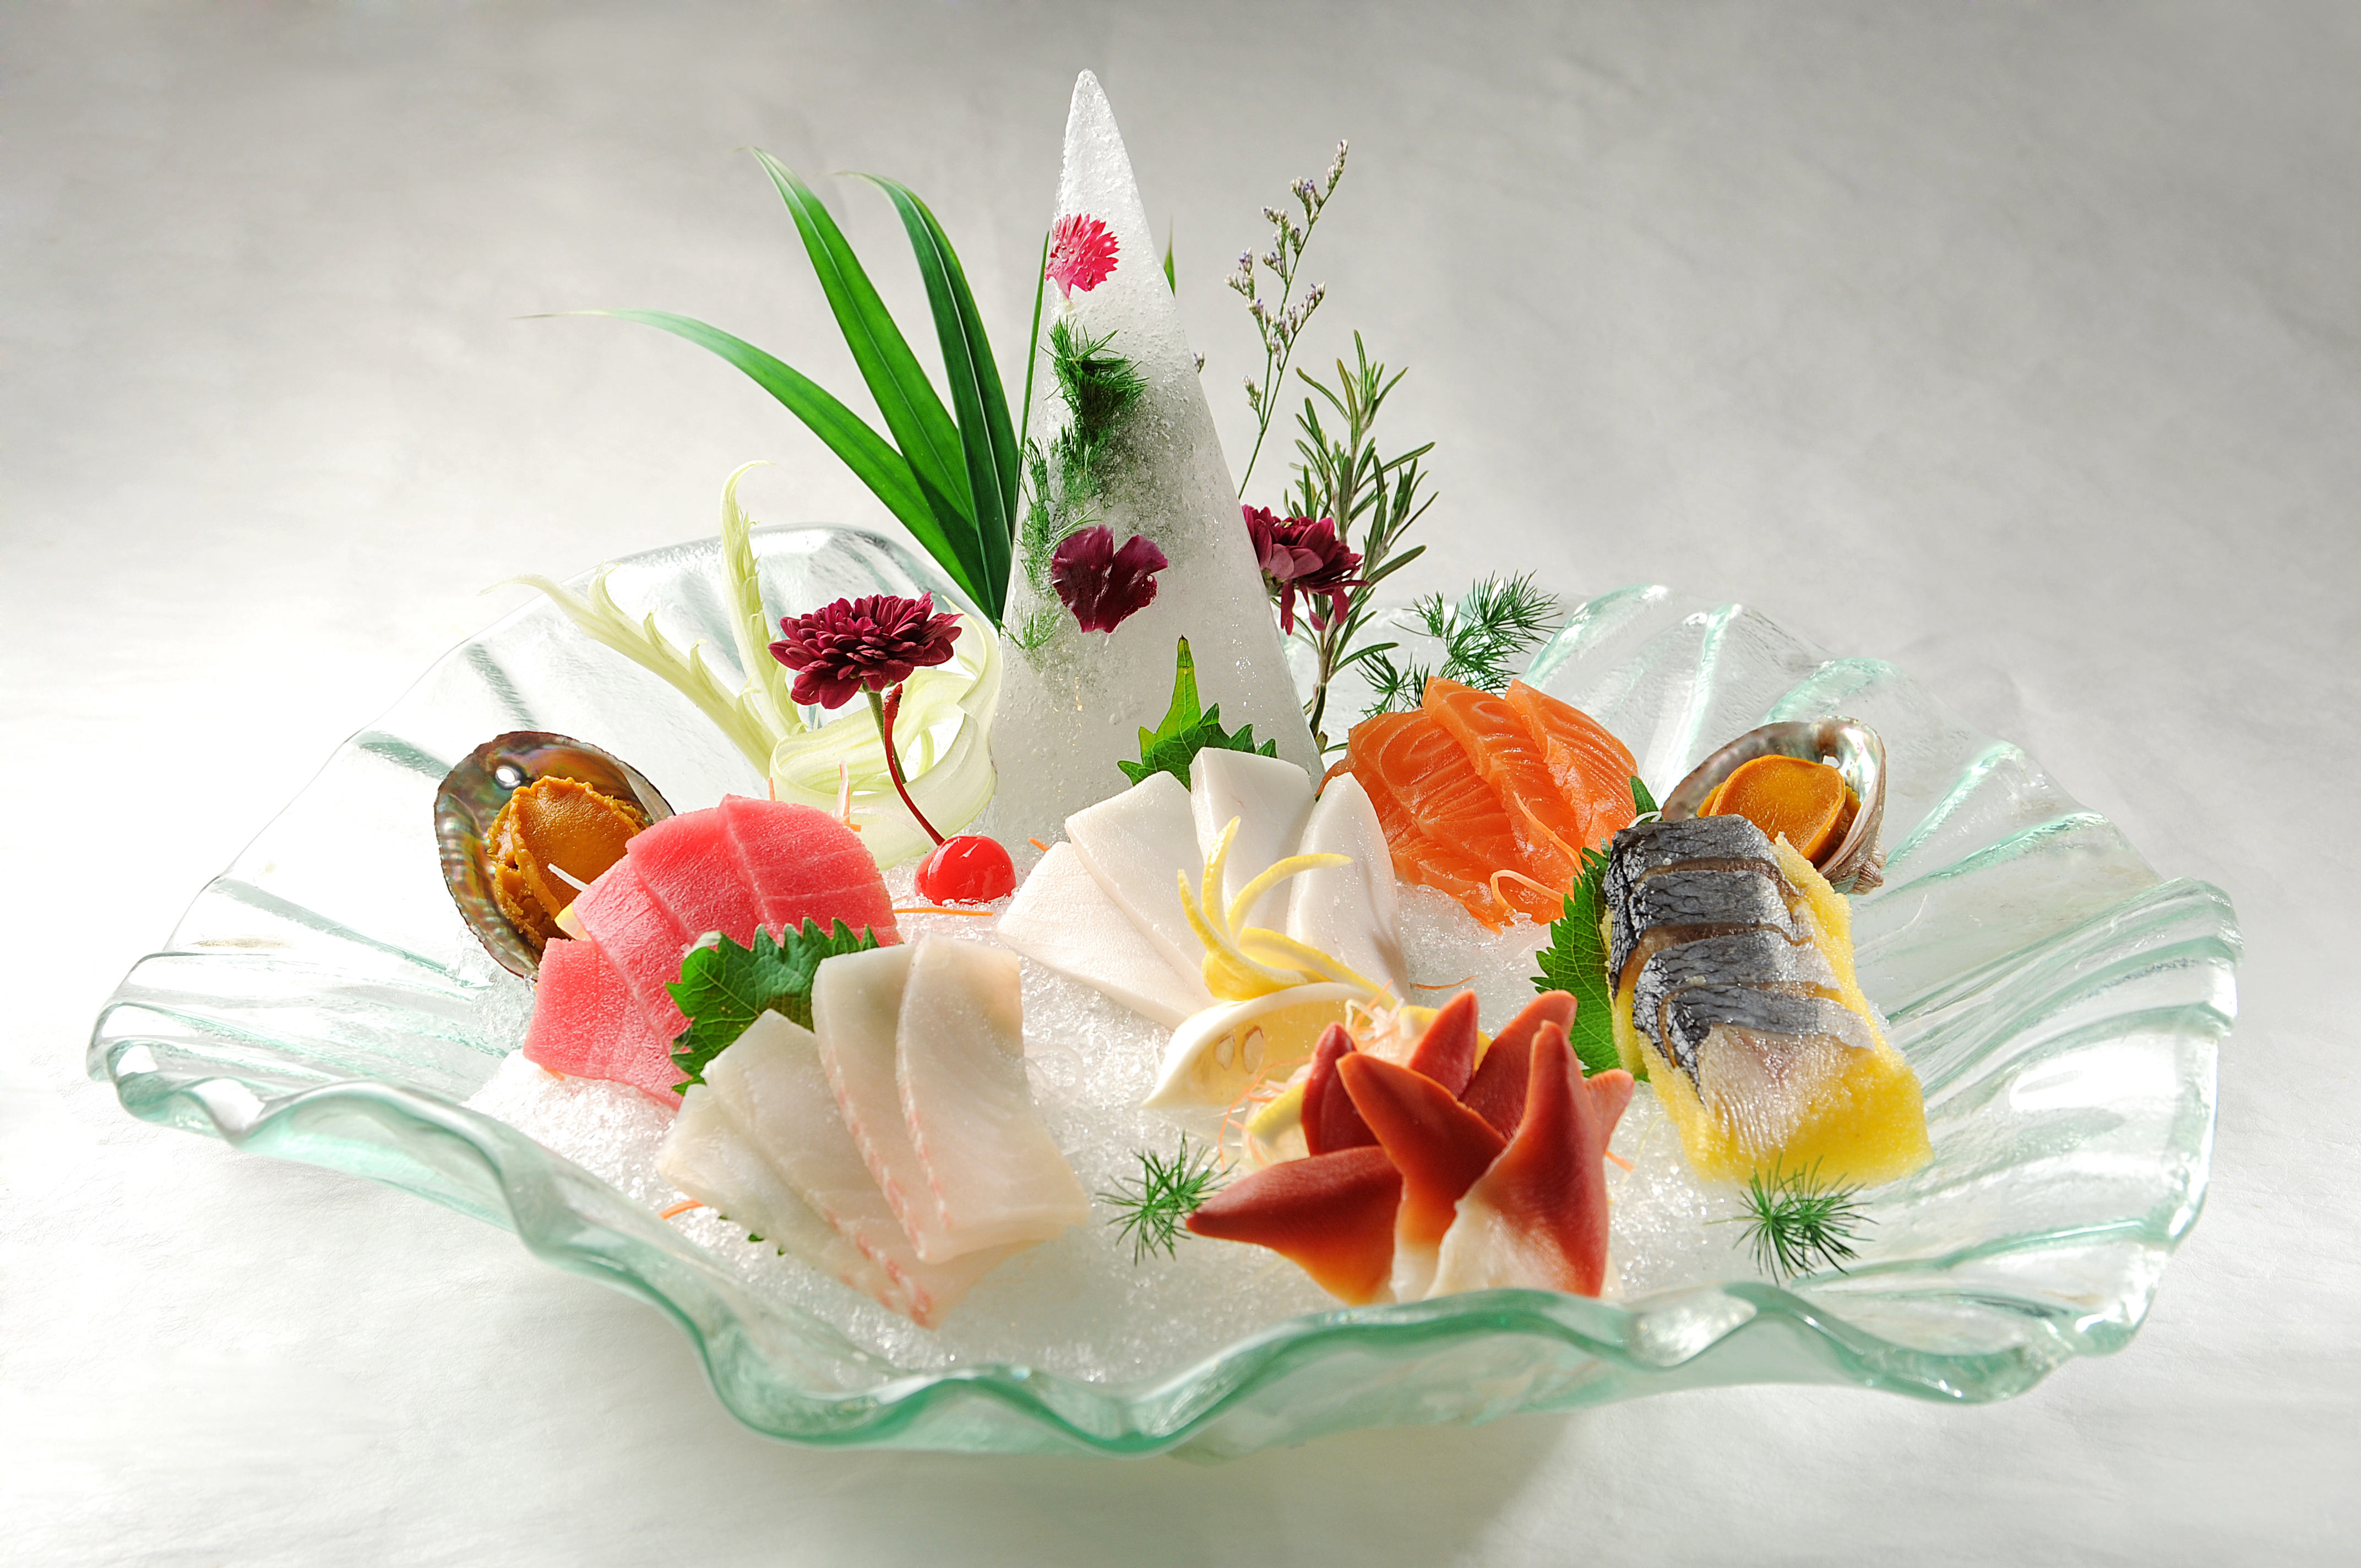 经典美食(15):海鲜刺身拼盘